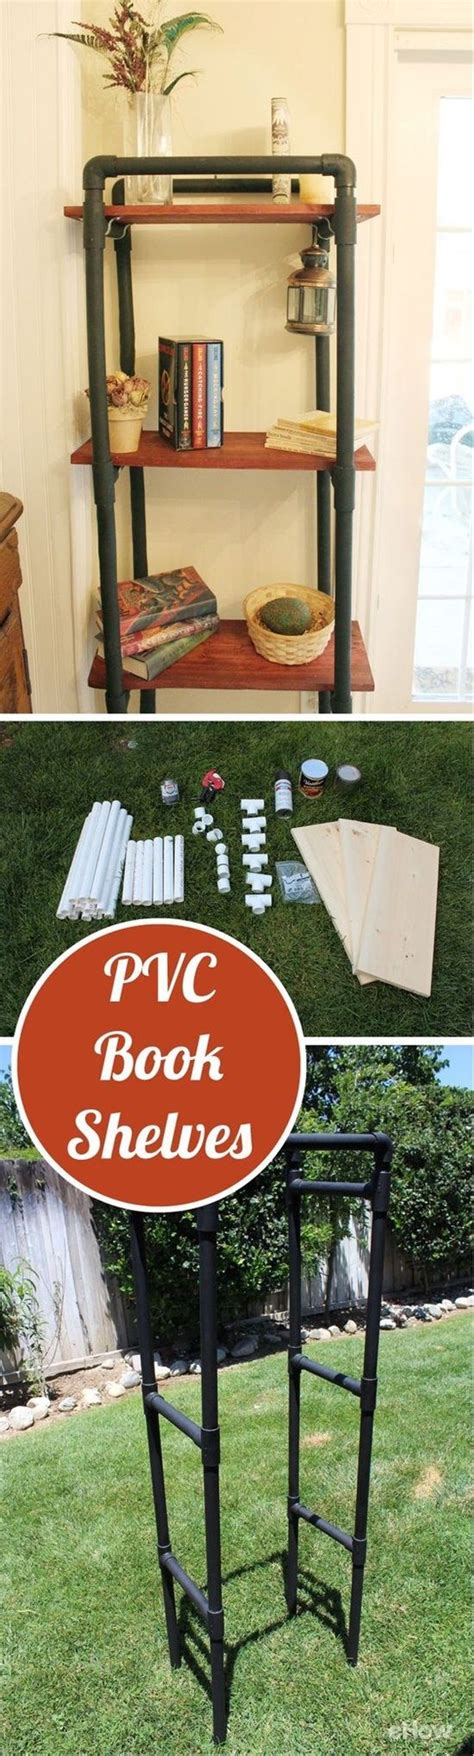 Pvc Book Shelves Bookshelves Diy Pvc Projects Pvc Furniture